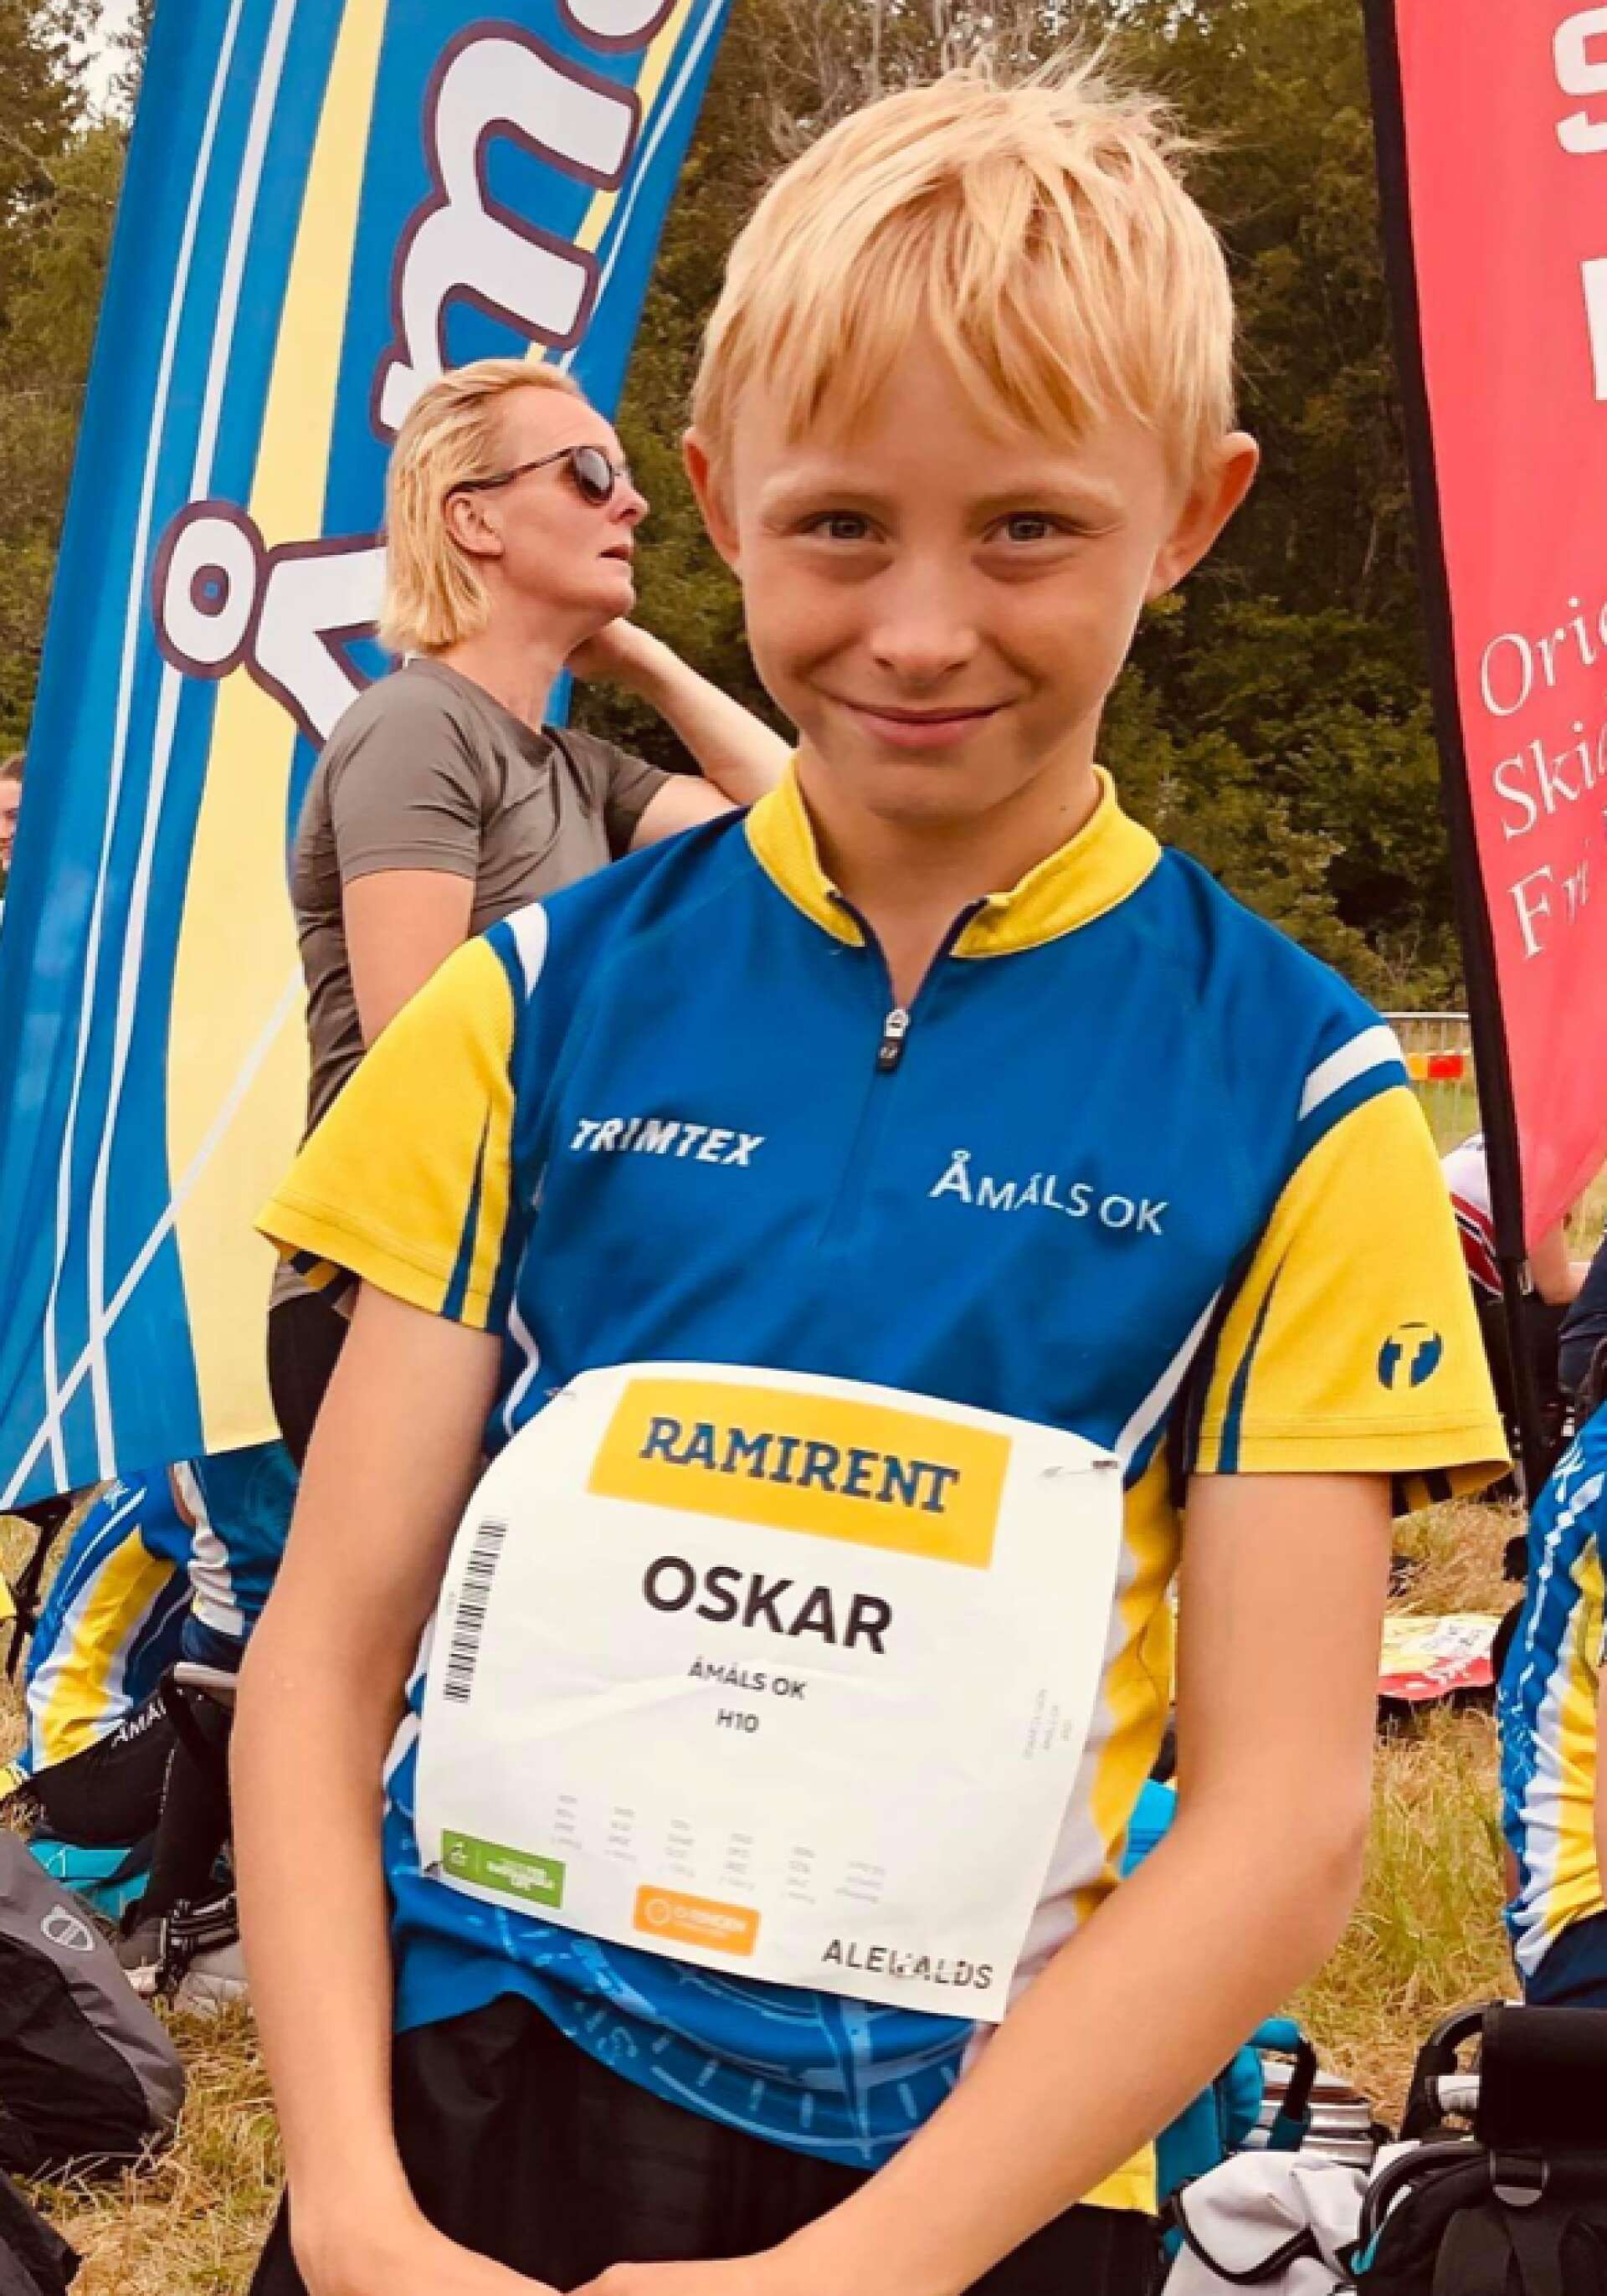 Åmåls OK:s Oskar Olsson blev femma över långdistans i klassen H10.